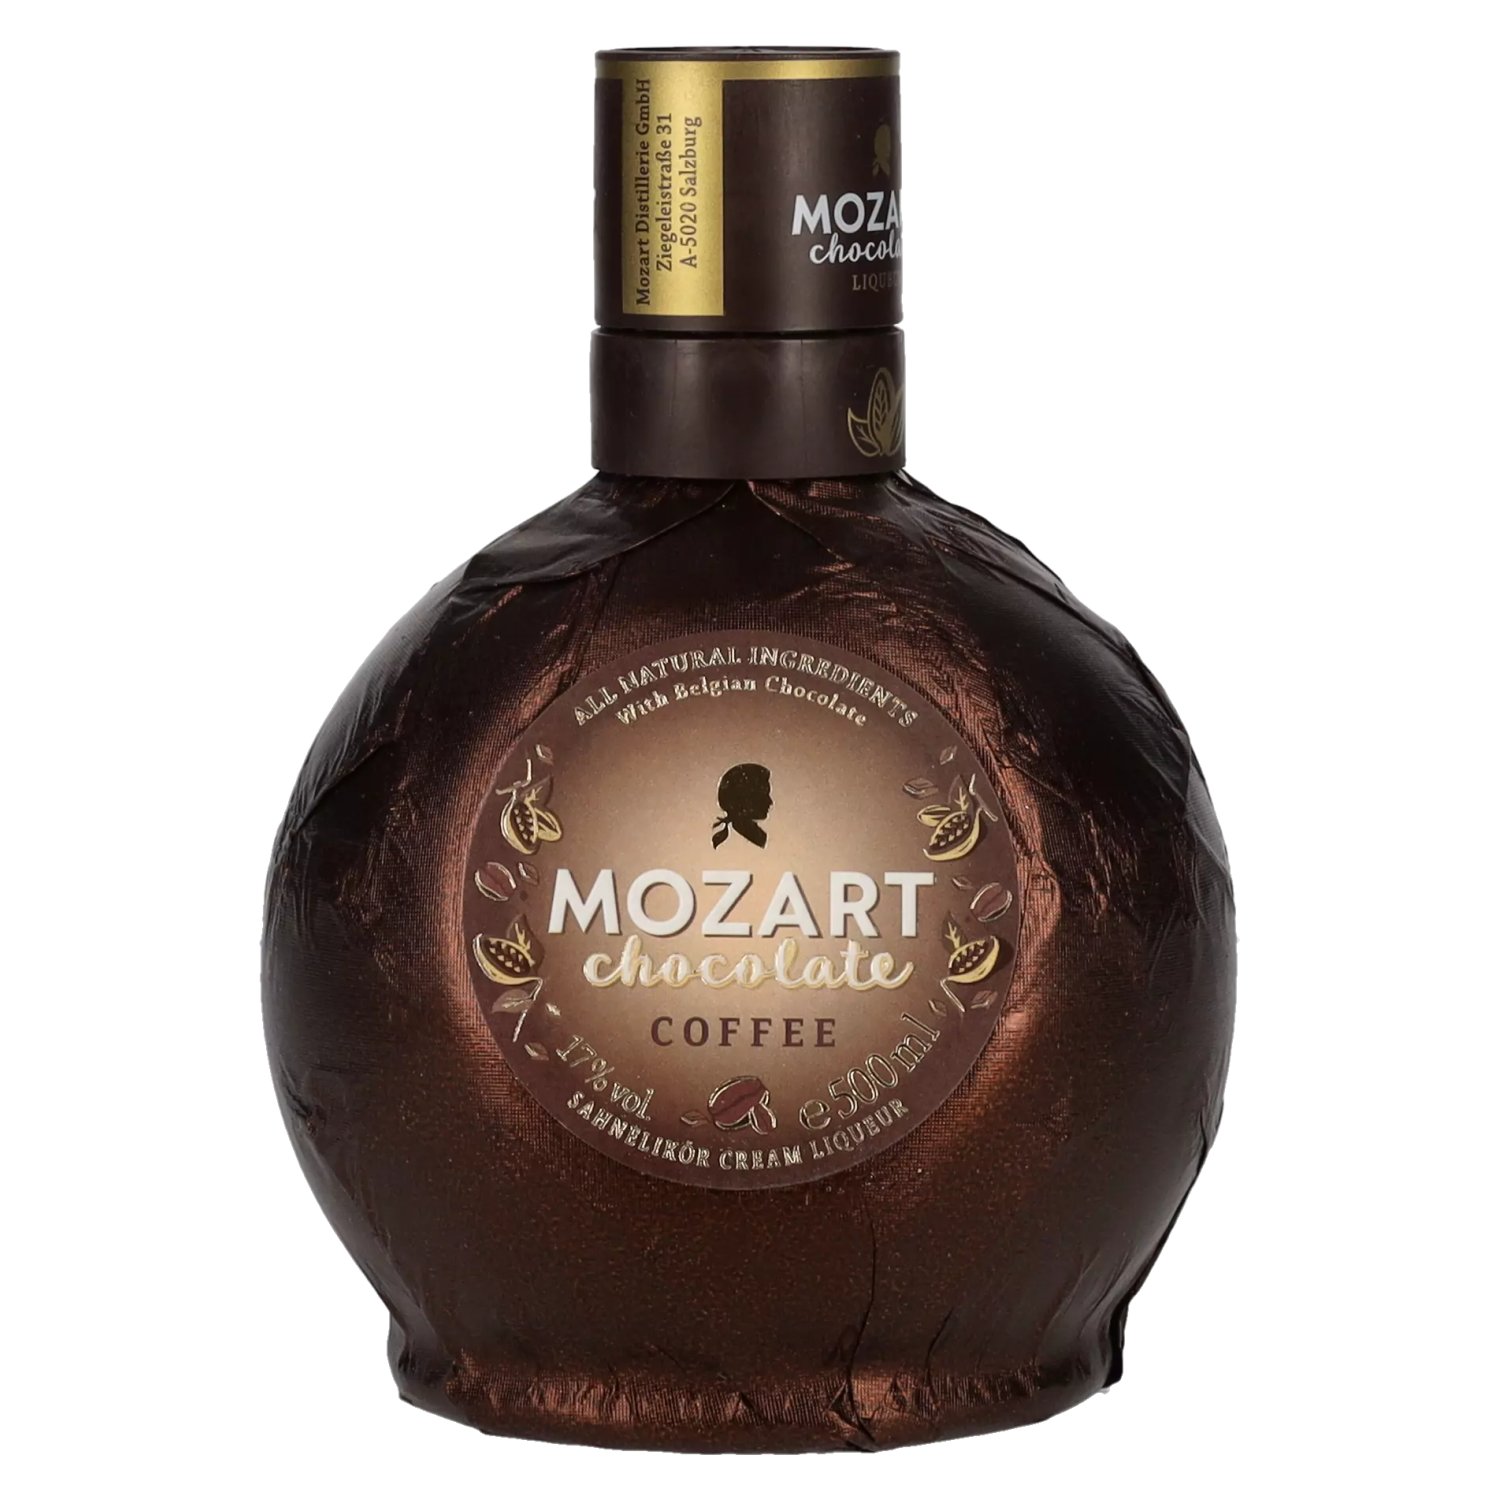 Vol. Chocolate Coffee Mozart 0,5l delicando - 17%